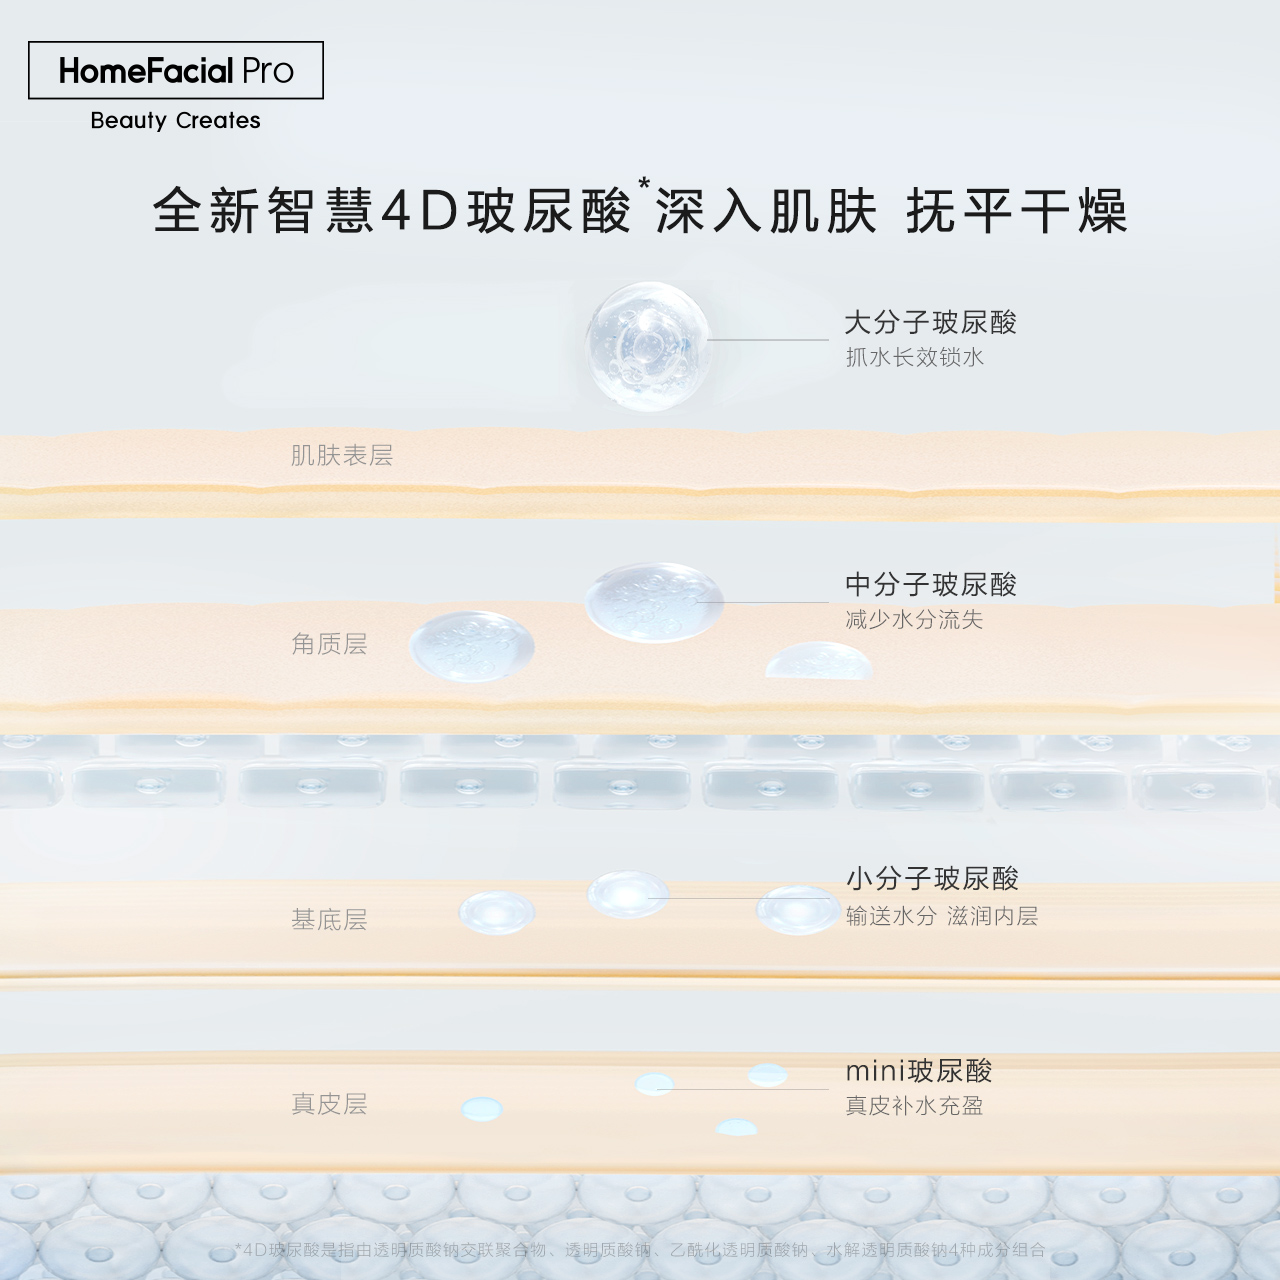 HFP玻尿酸密集補水面膜 修護敏感肌膚保濕滋潤